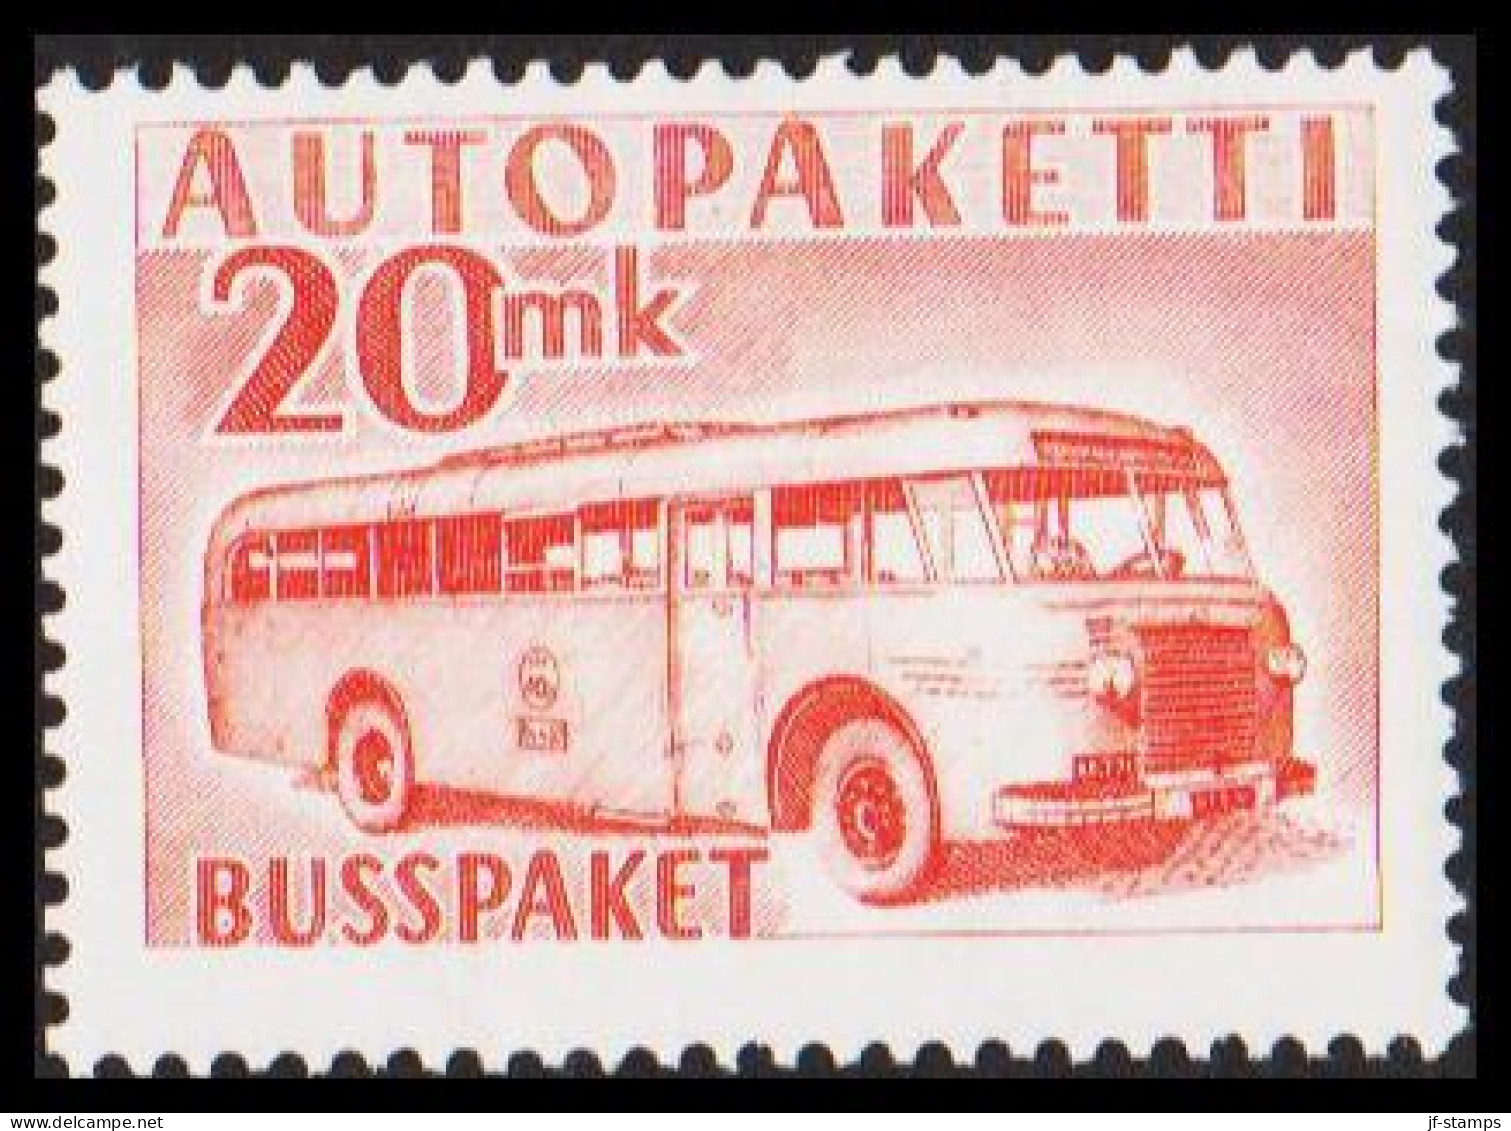 1952-1958. FINLAND. Mail Bus. 20 Mk. AUTOPAKETTI - BUSSPAKET Never Hinged. (Michel AP 7) - JF534382 - Colis Par Autobus